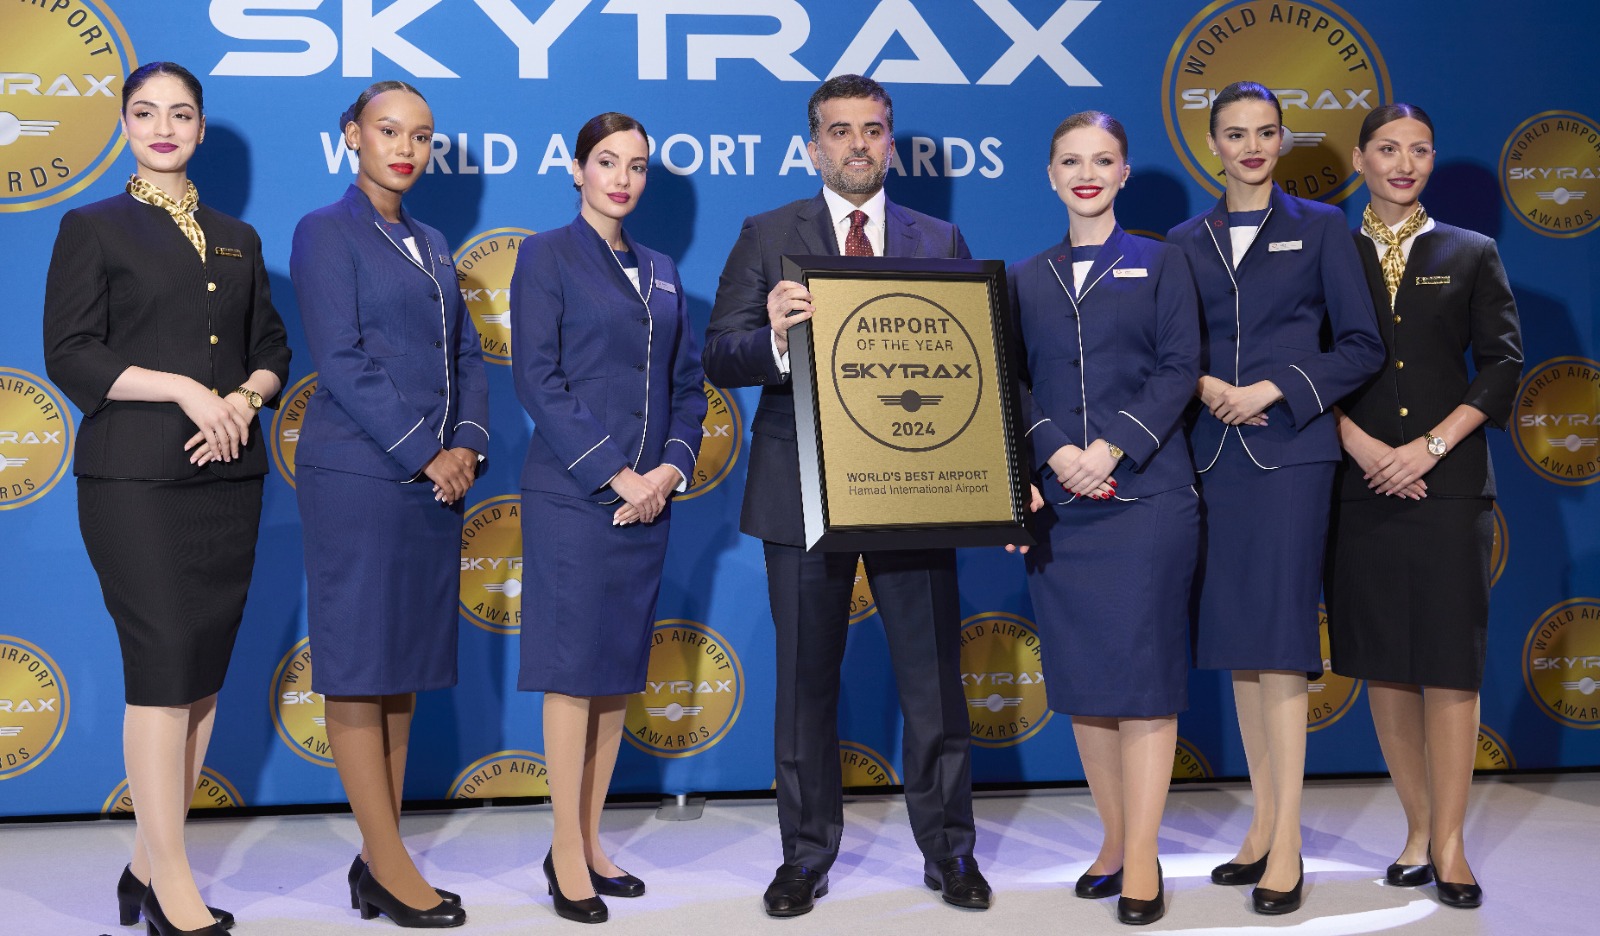 مطار حمد الدولي يحصد لقب "أفضل مطار في العالم" ضمن جوائز سكاي تراكس العالمية للمطارات 2024